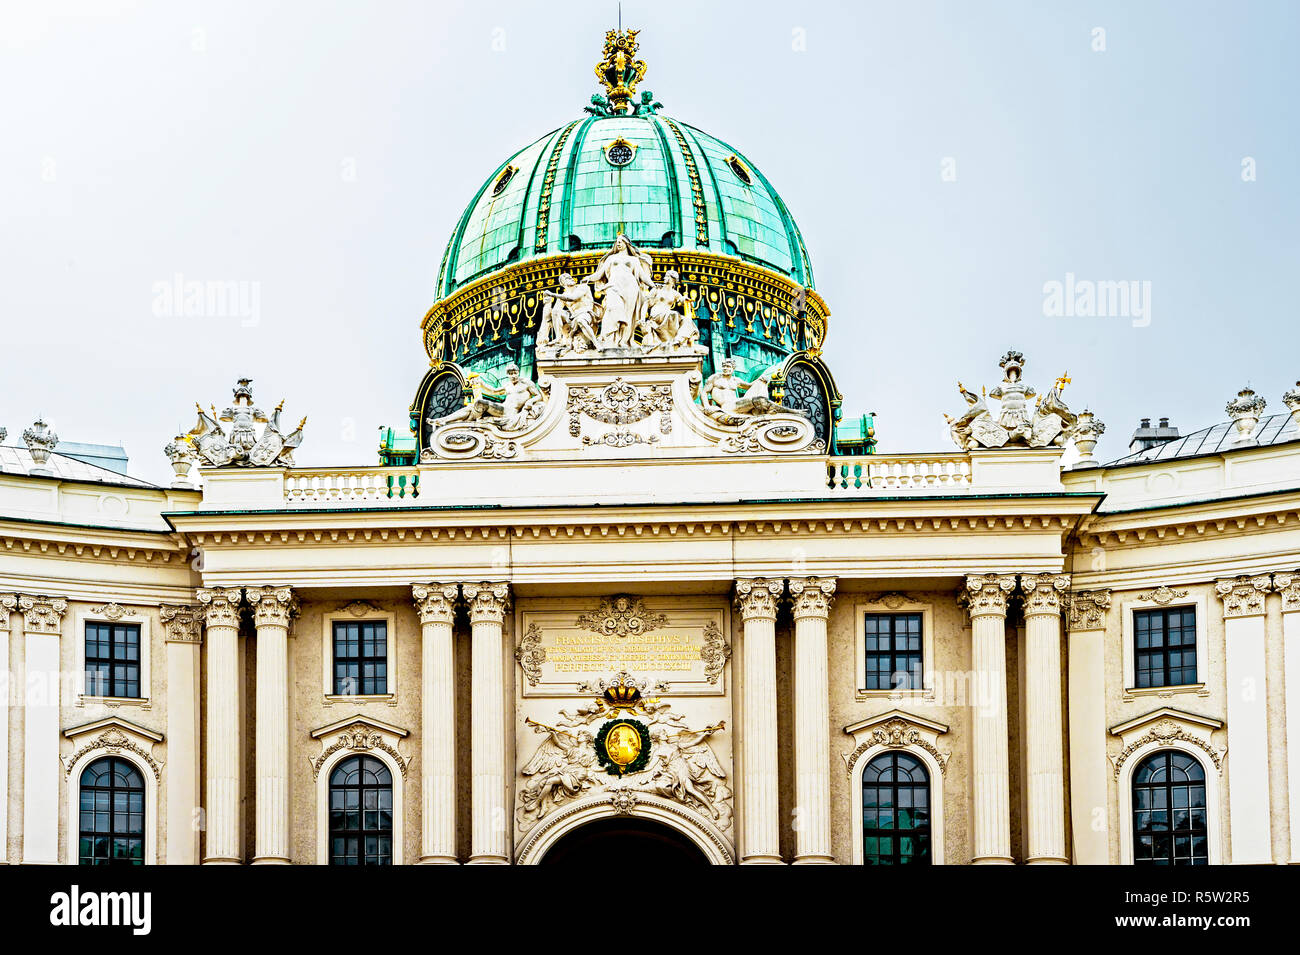 Wien, Hofburg, Österreich; Vienna (Austria), Hofburg, imperial palace Stock Photo